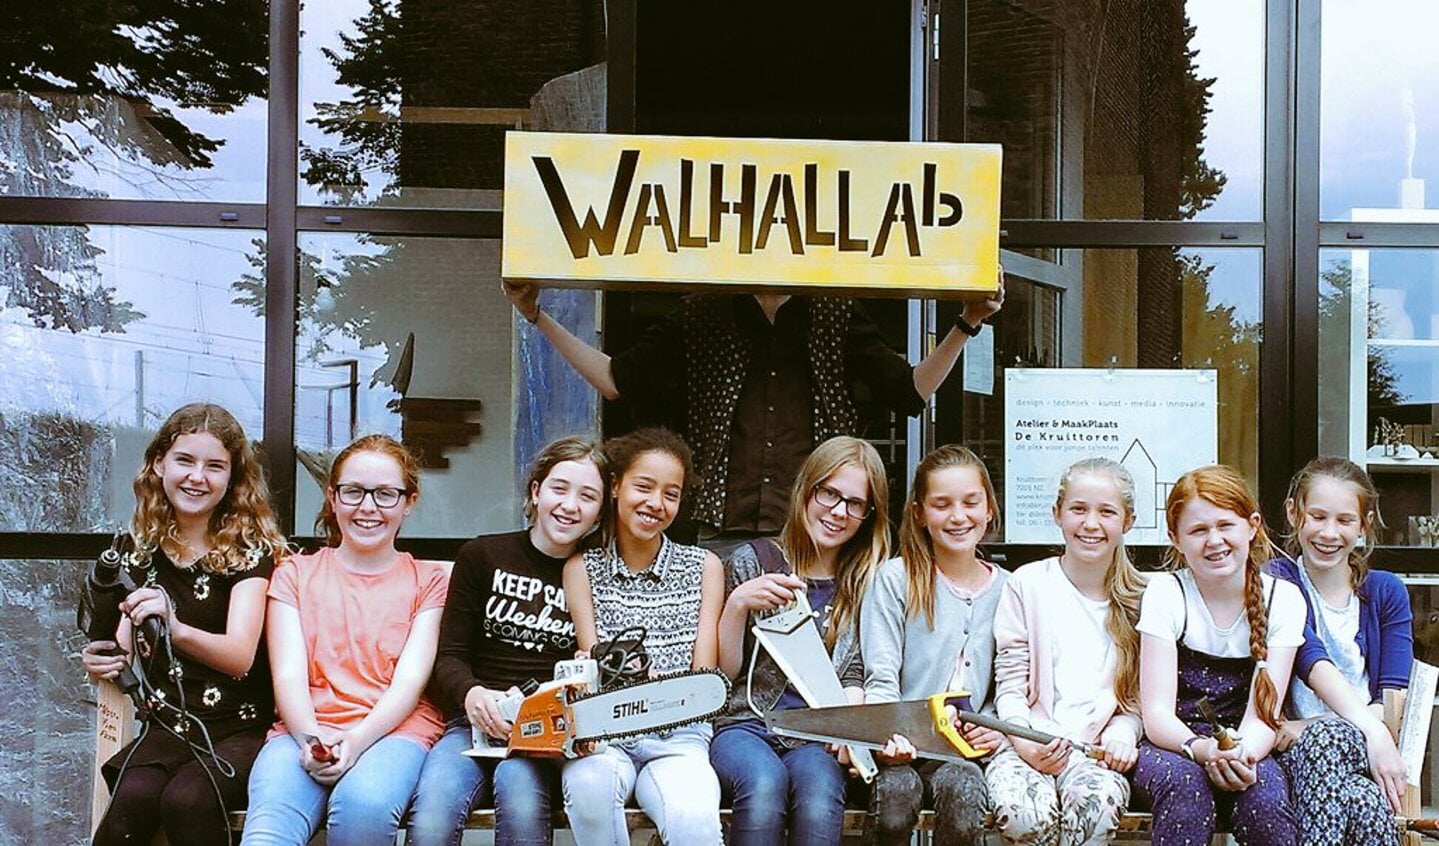 WALHALLAb ontvangt deze prijs voor haar bijzondere werk voor kinderen en jongeren. Foto: PR